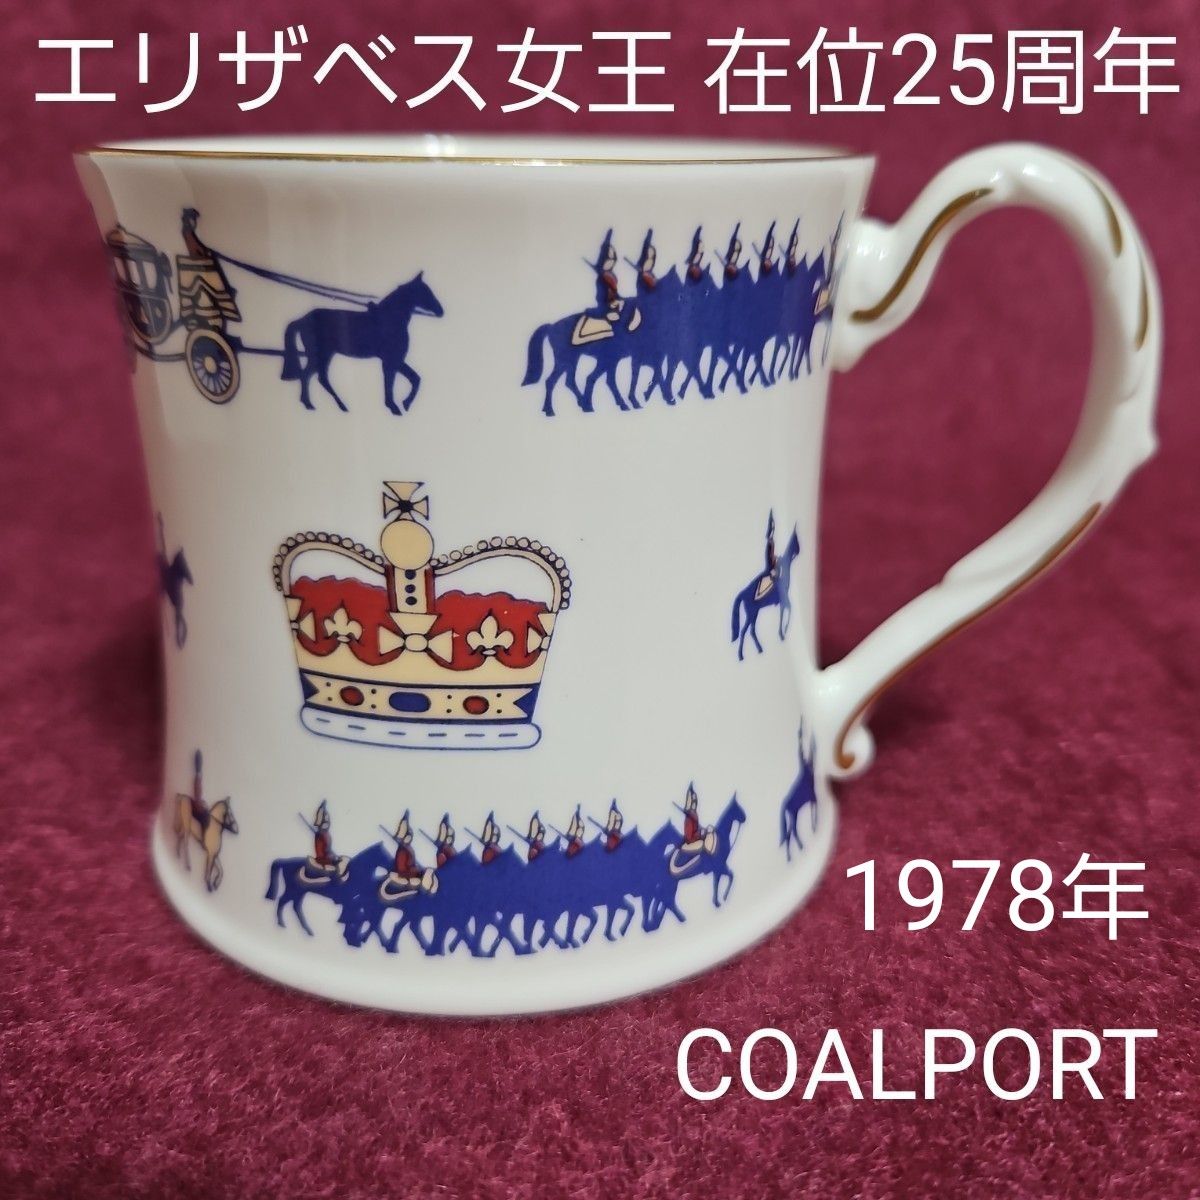 コールポート エリザベス女王 在位25周年記念 限定2500個 マグカップ